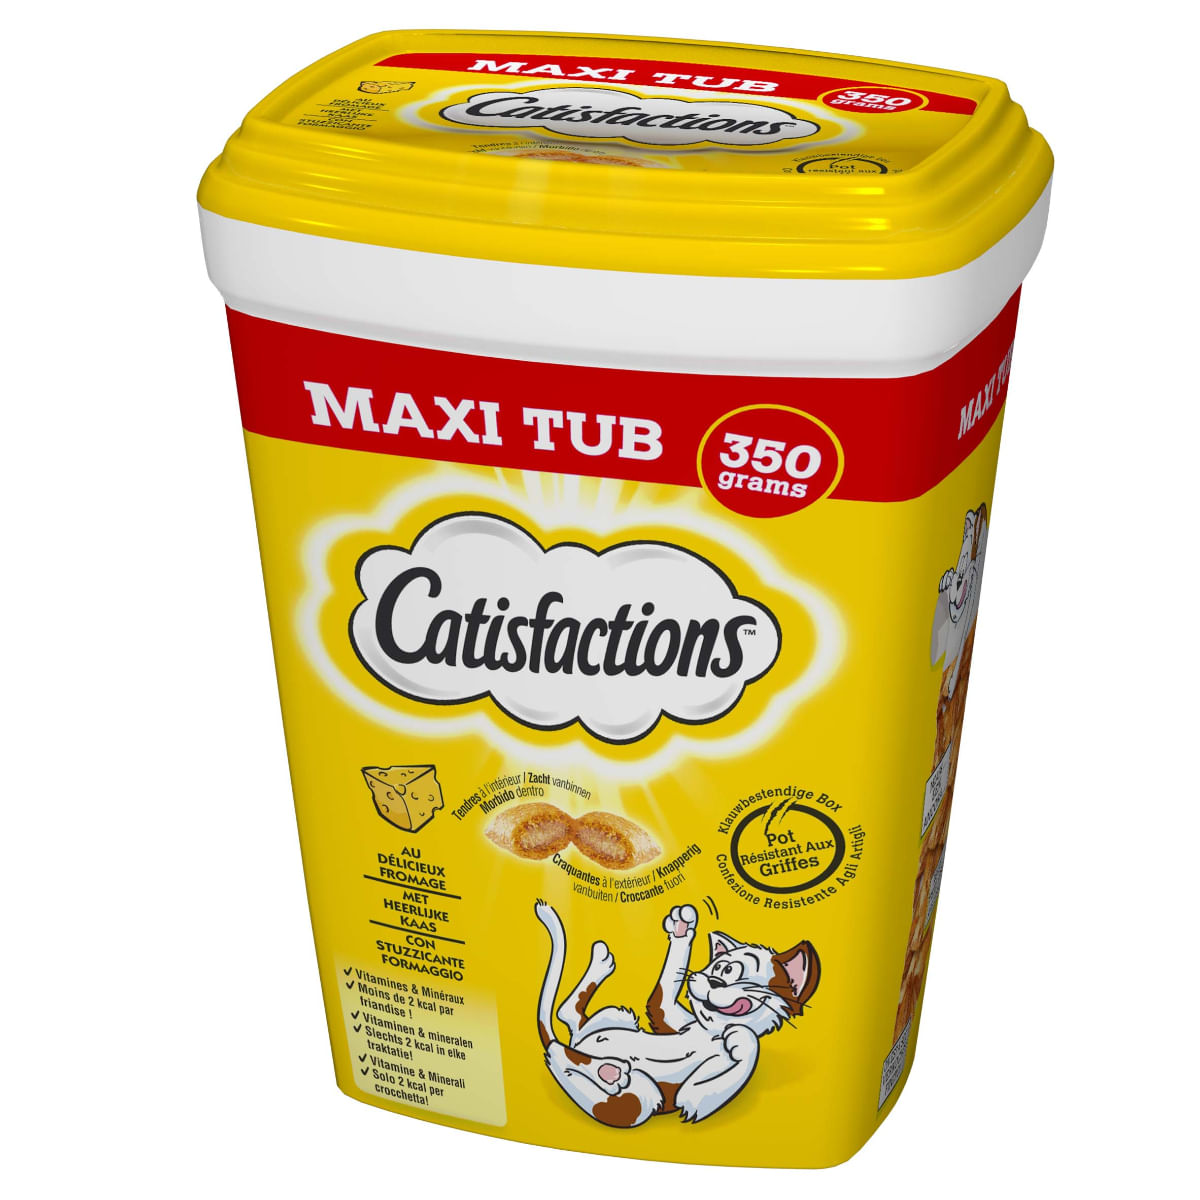 2x Catisfactions Maxi Tub con Formaggio 350gr